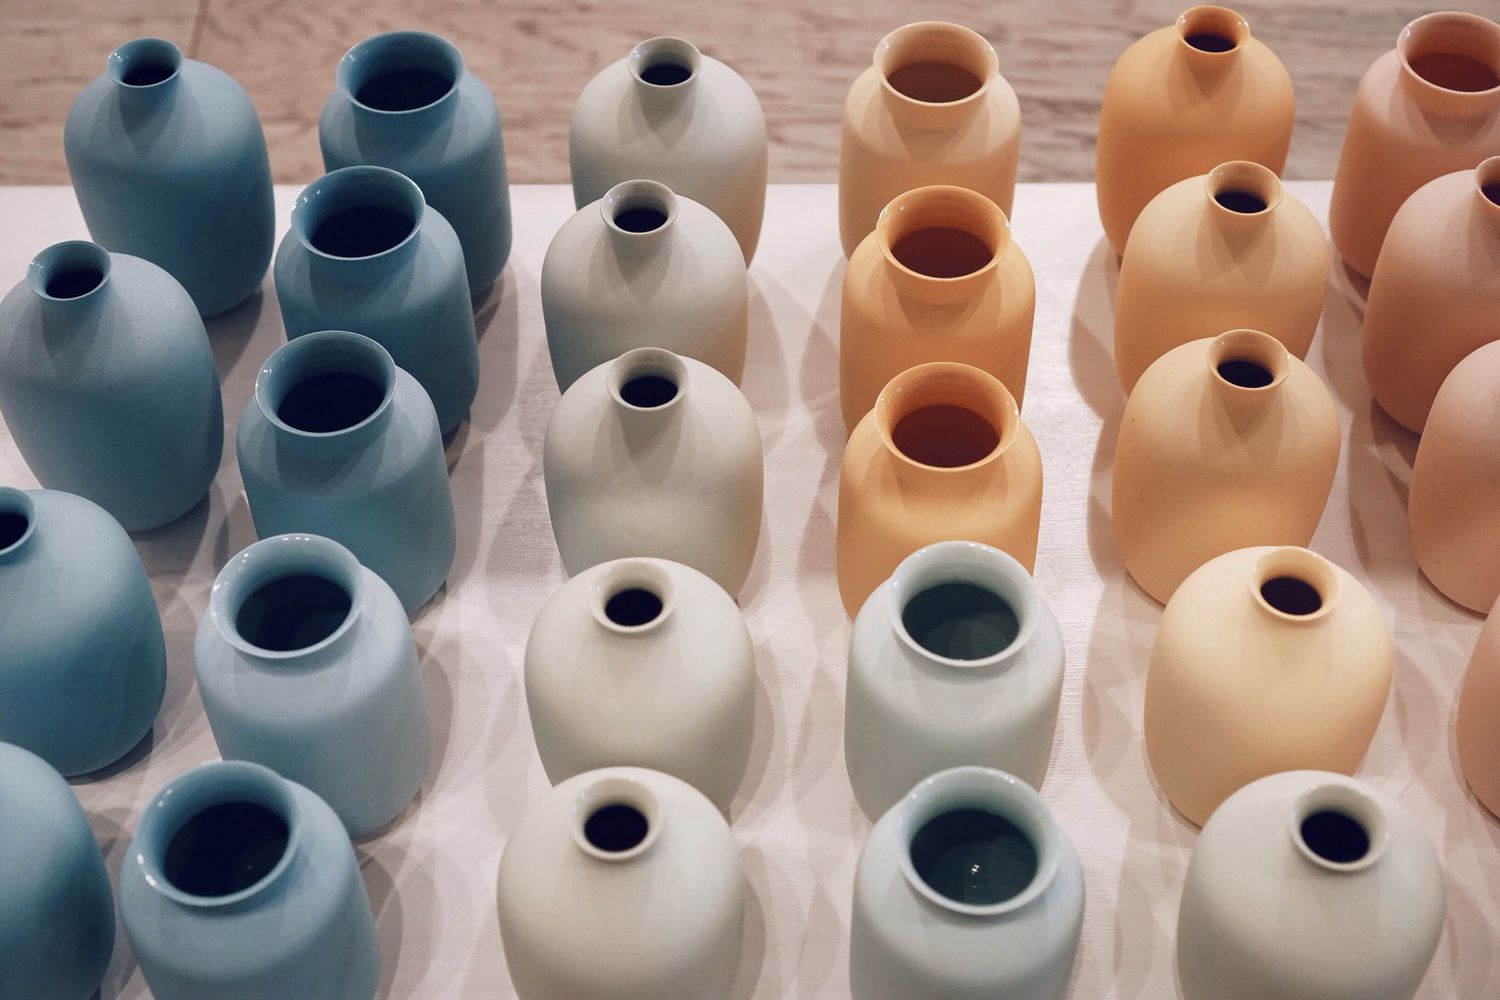 Arrangement aus Dutzenden von bunten Keramikvasen.